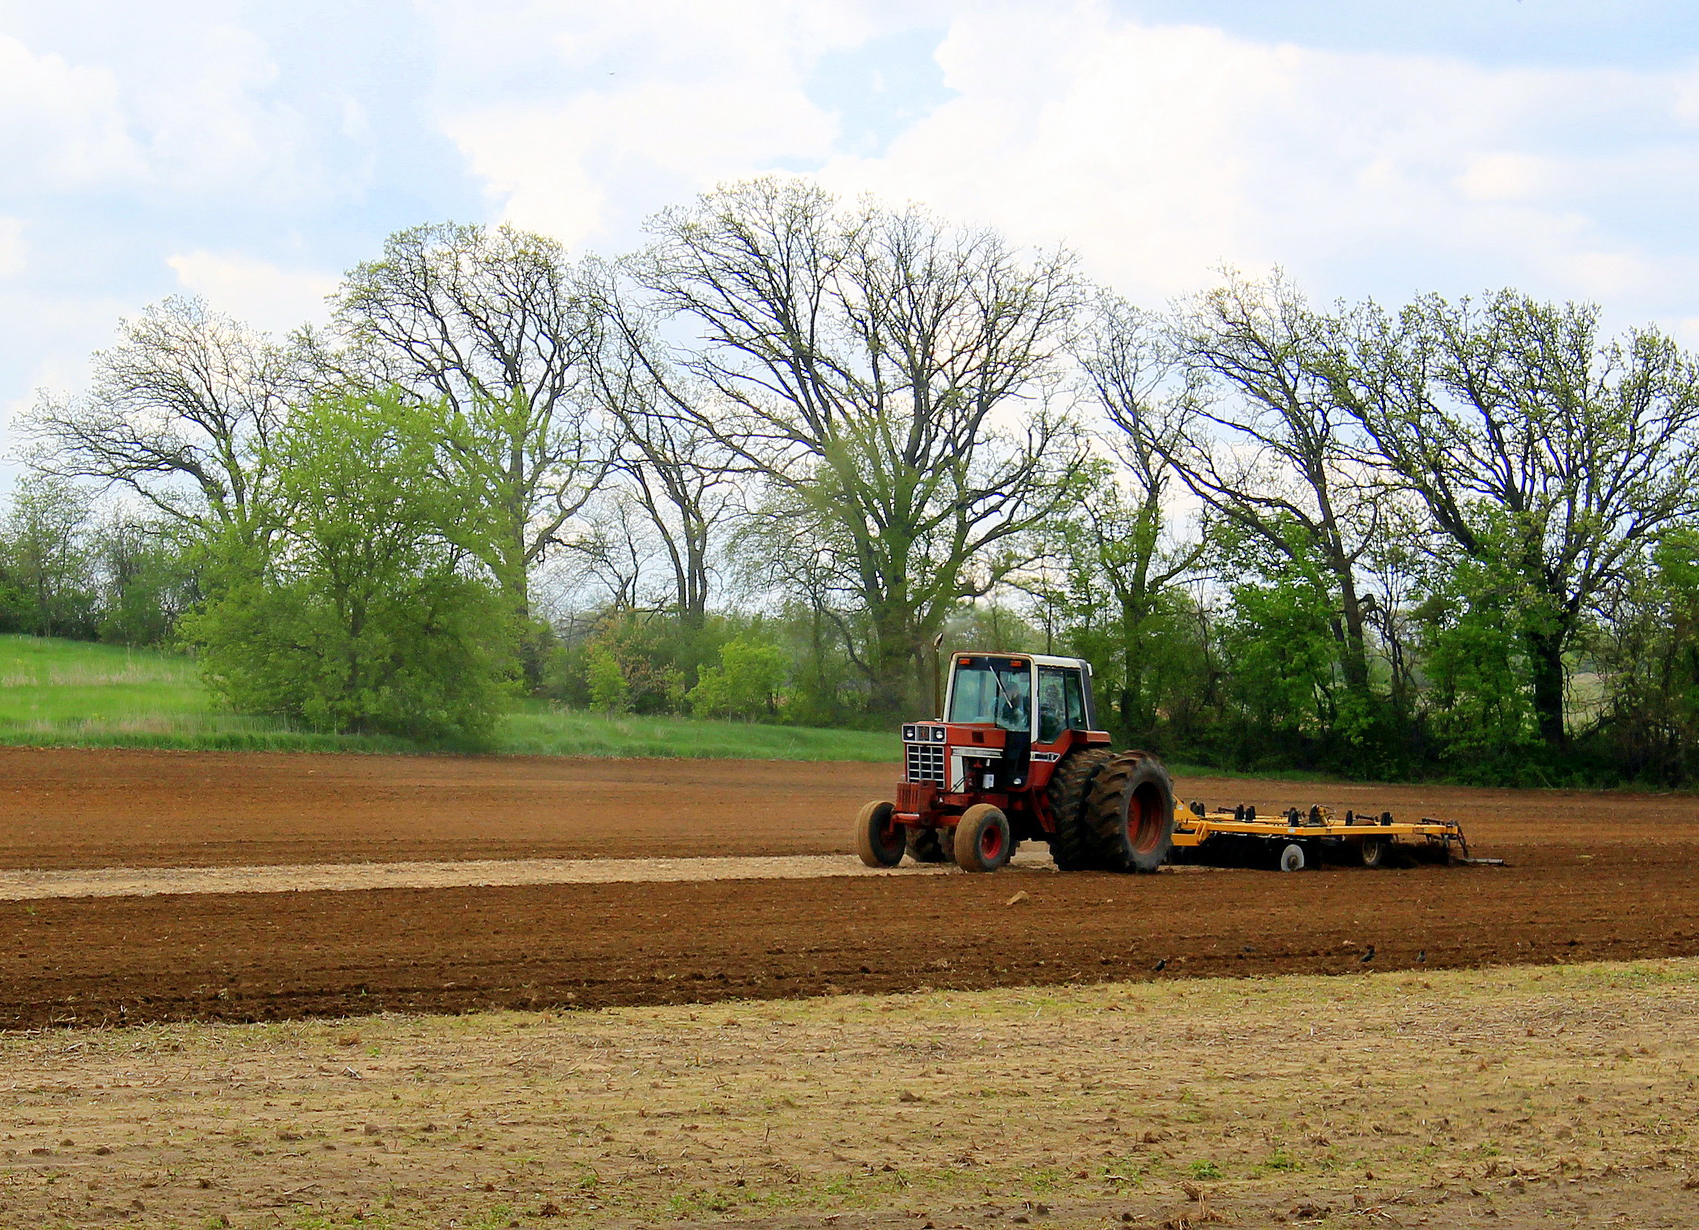 Tractor in Wisconsin farm field